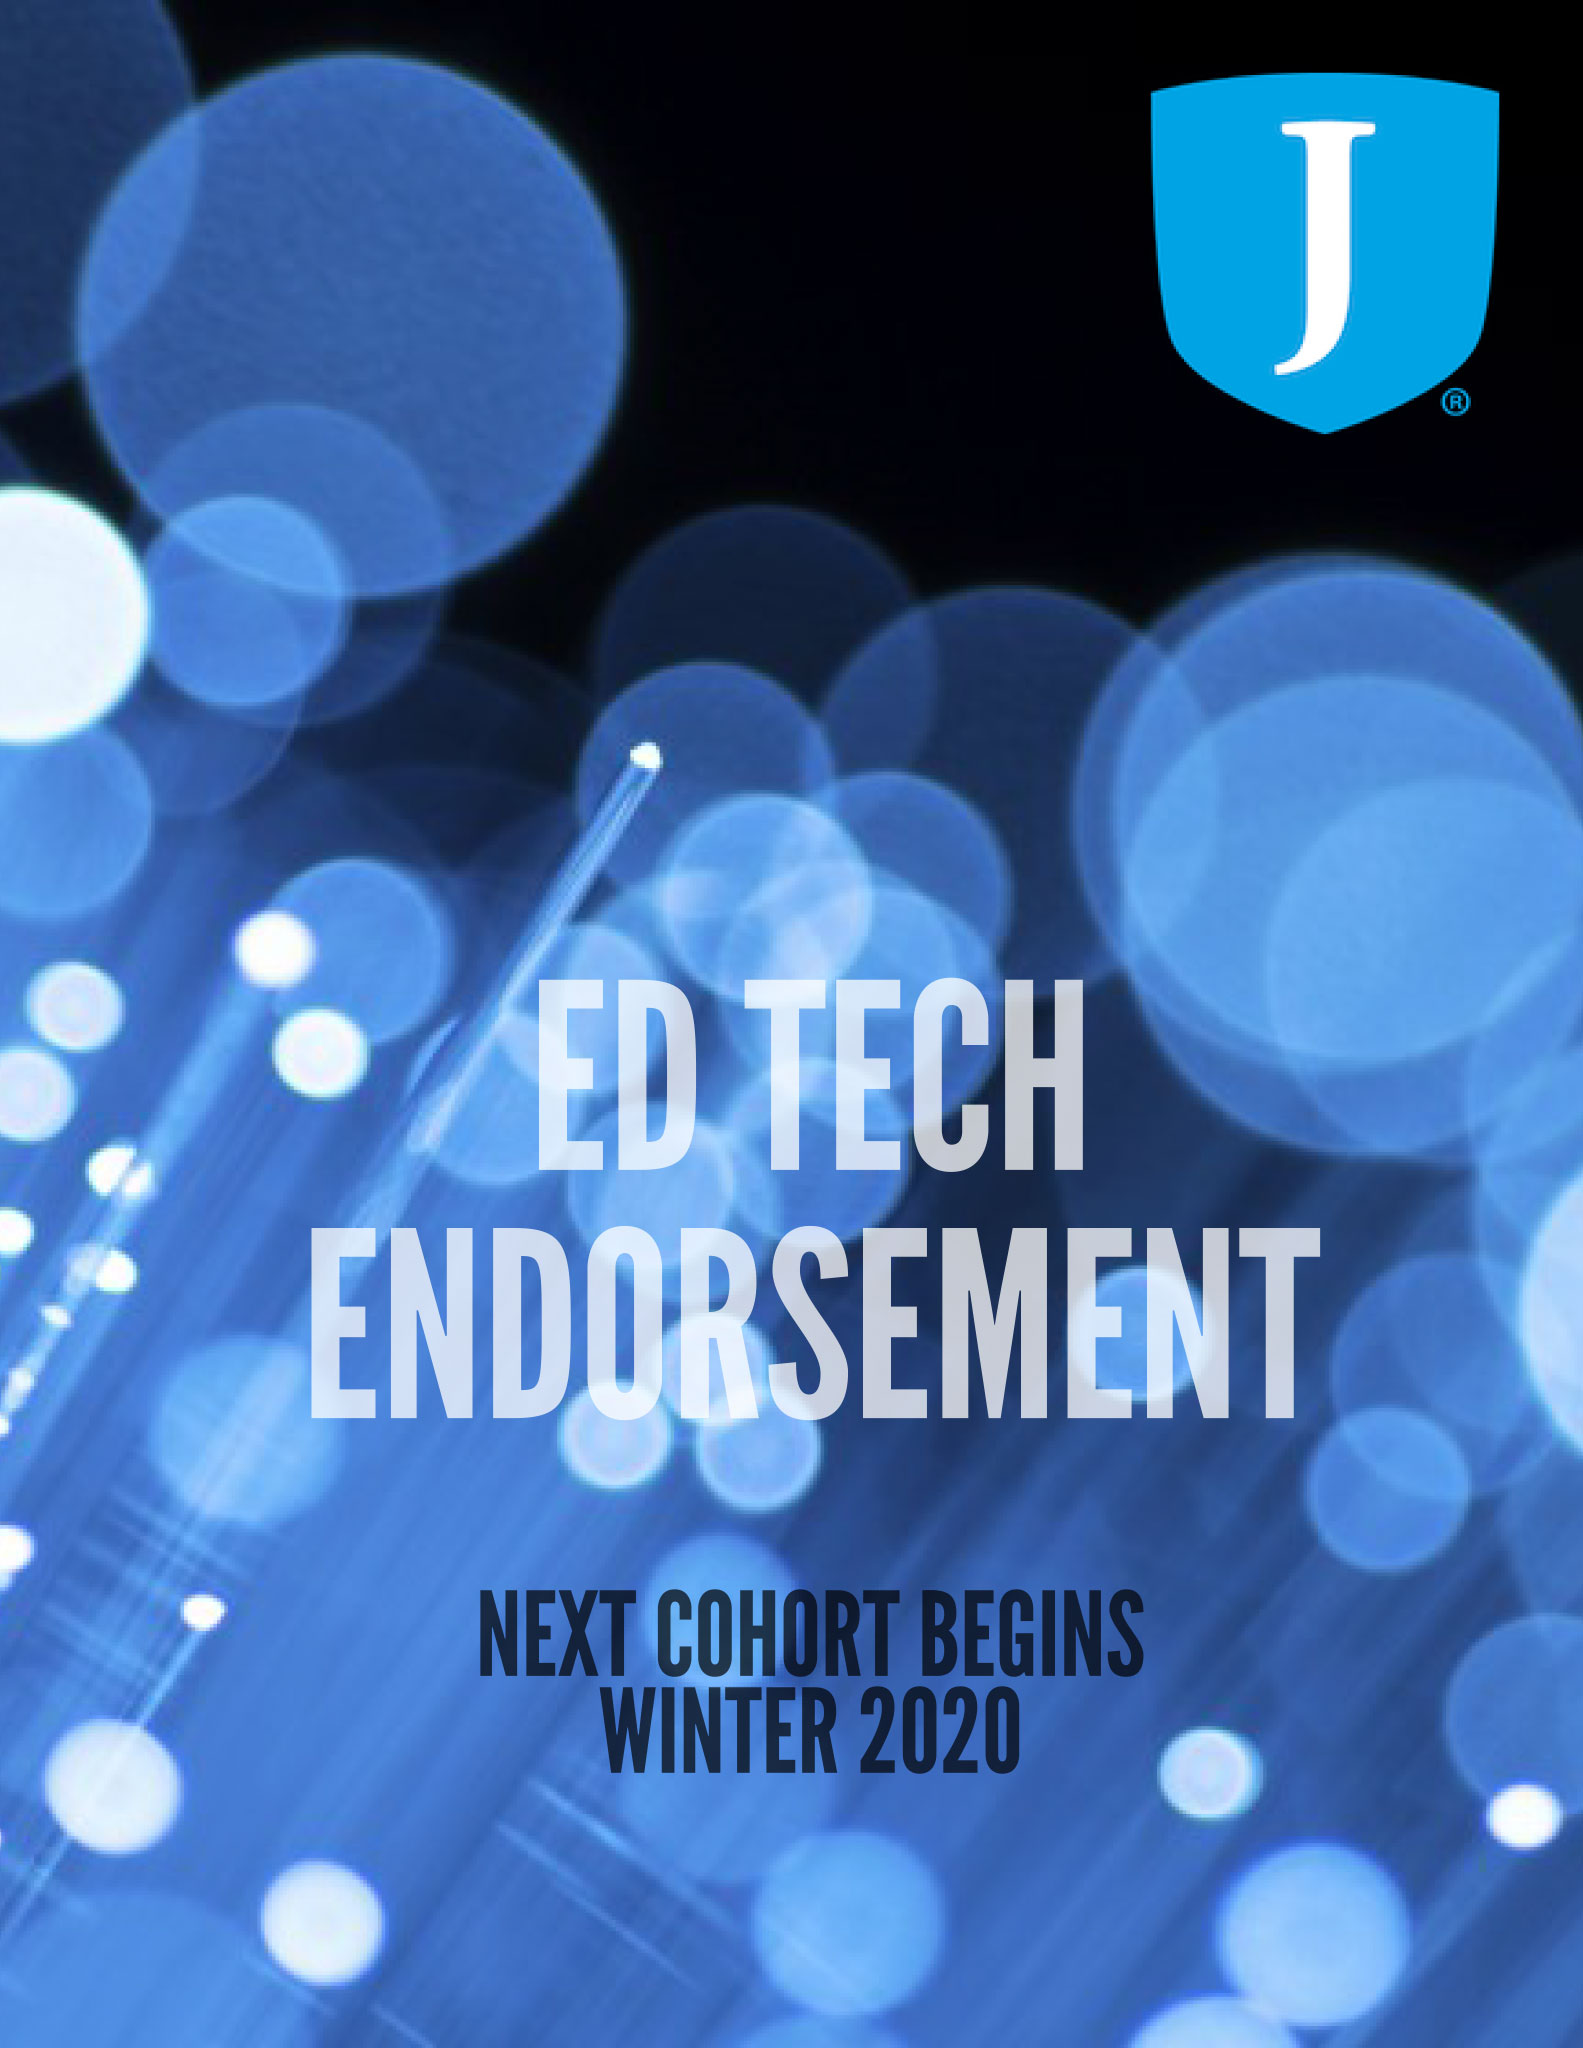 Ed Tech Endorsement Fiber Optic motif